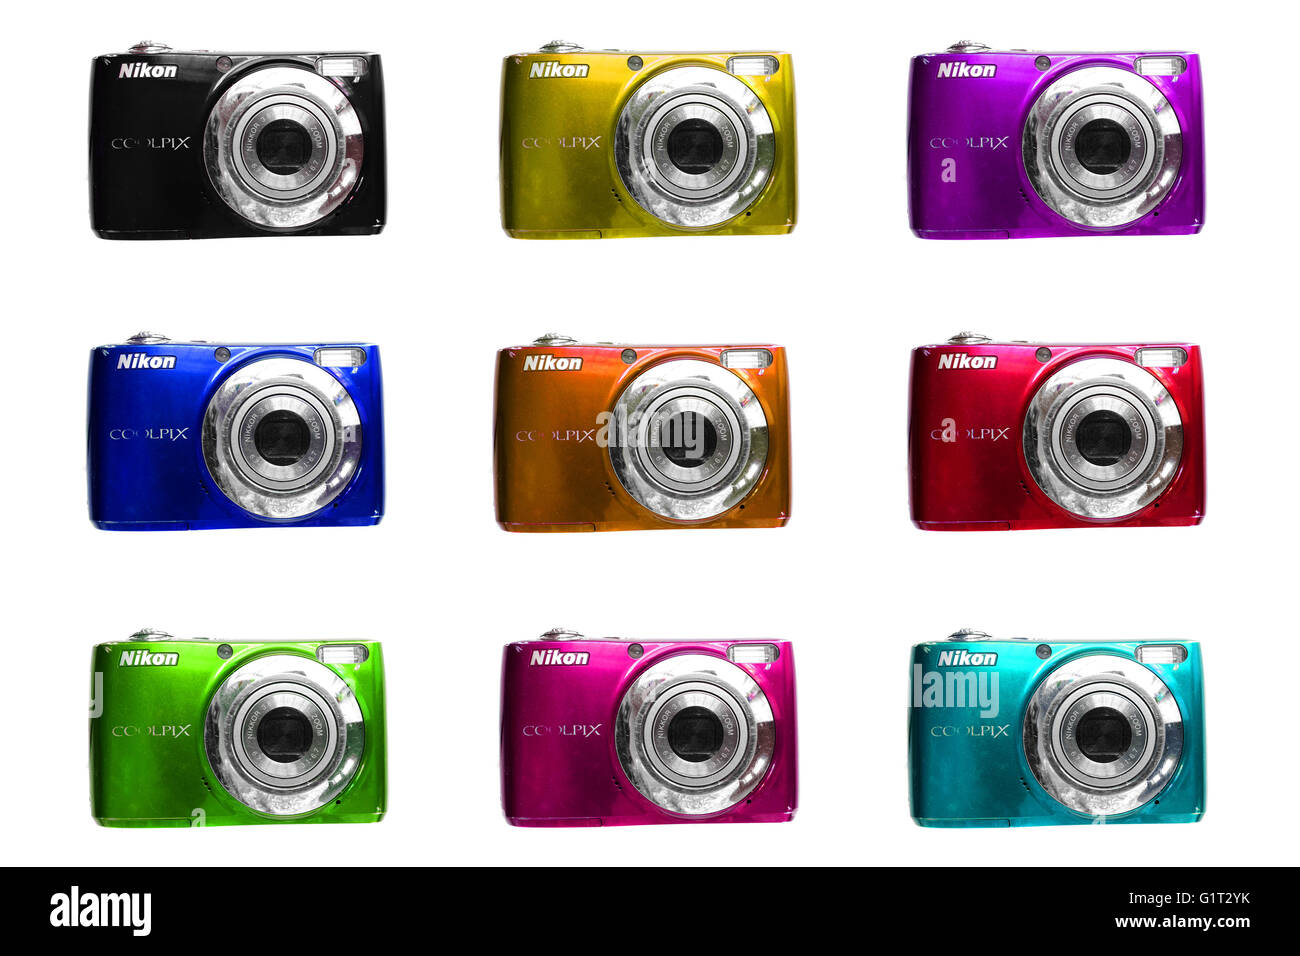 Una griglia di colorati Nikon fotocamere Coolpix fotografati contro uno sfondo bianco. Foto Stock